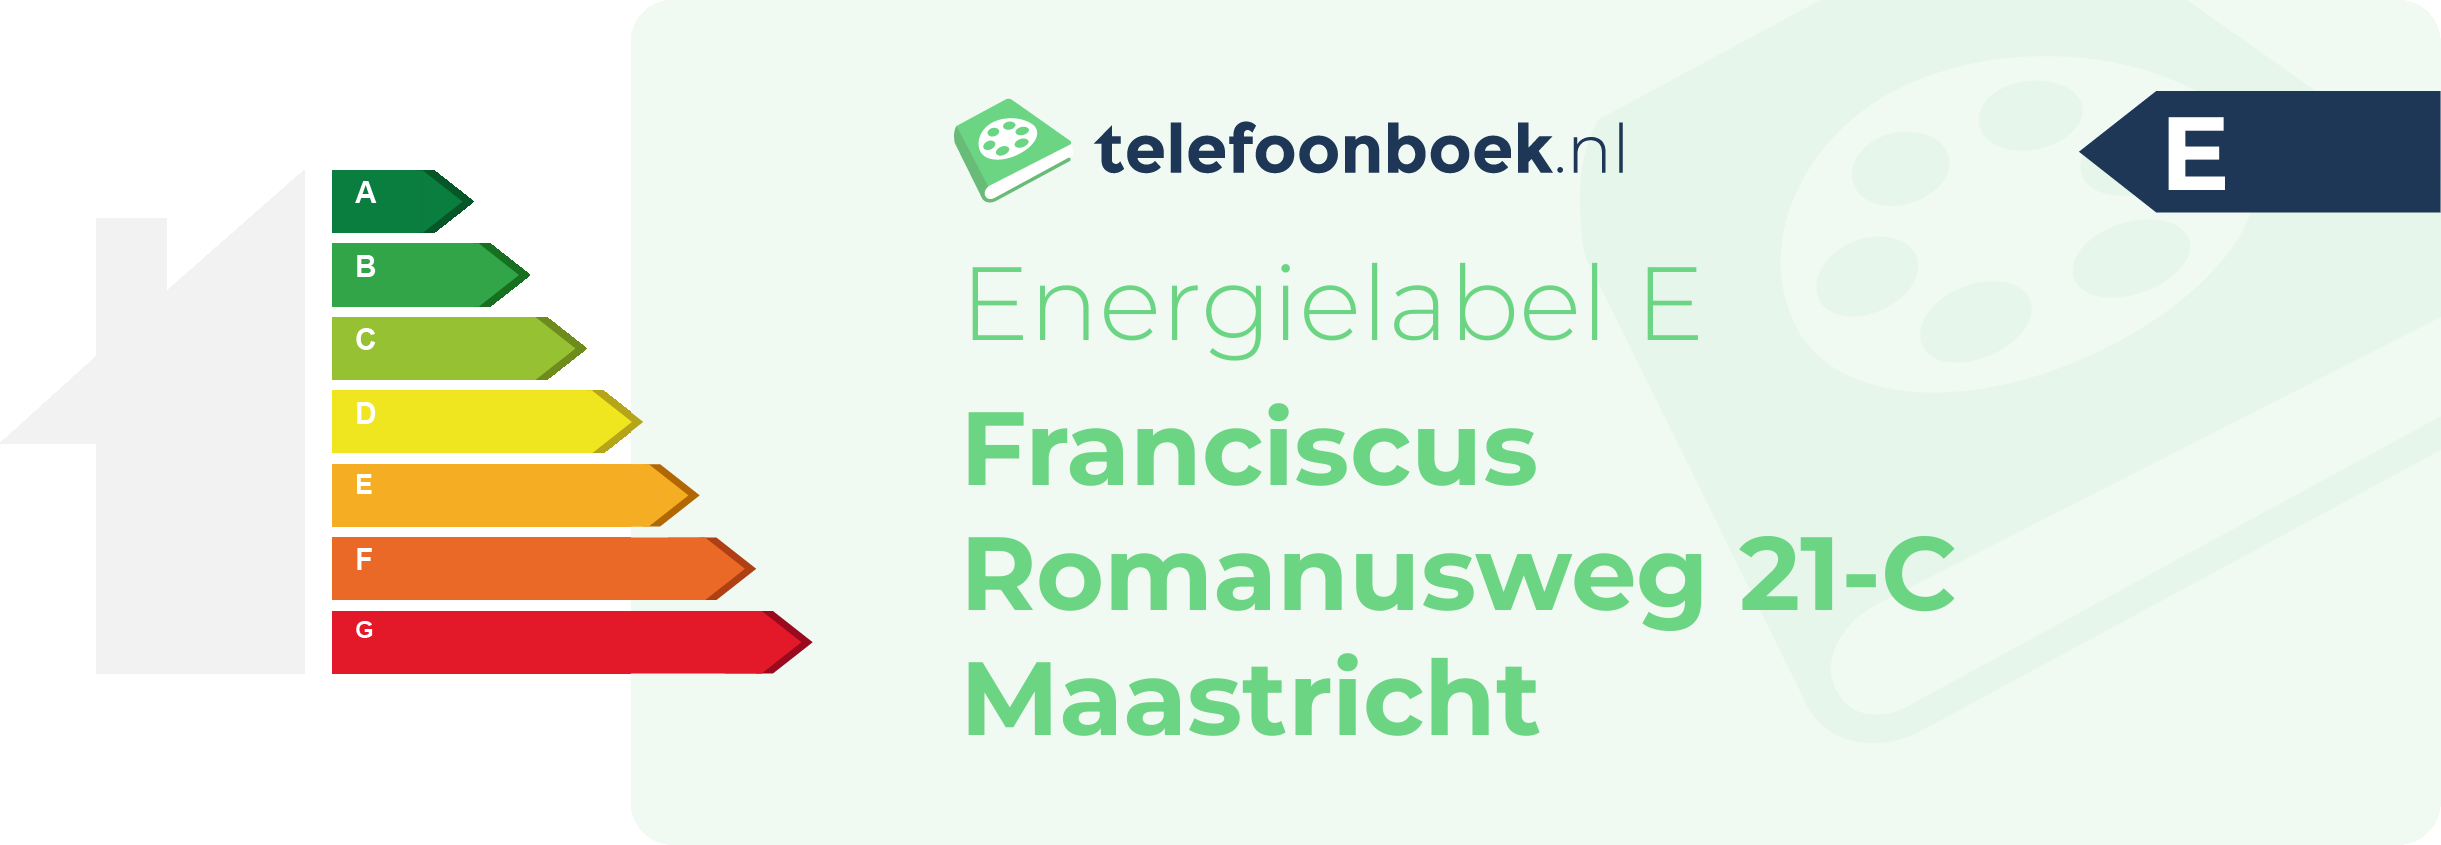 Energielabel Franciscus Romanusweg 21-C Maastricht